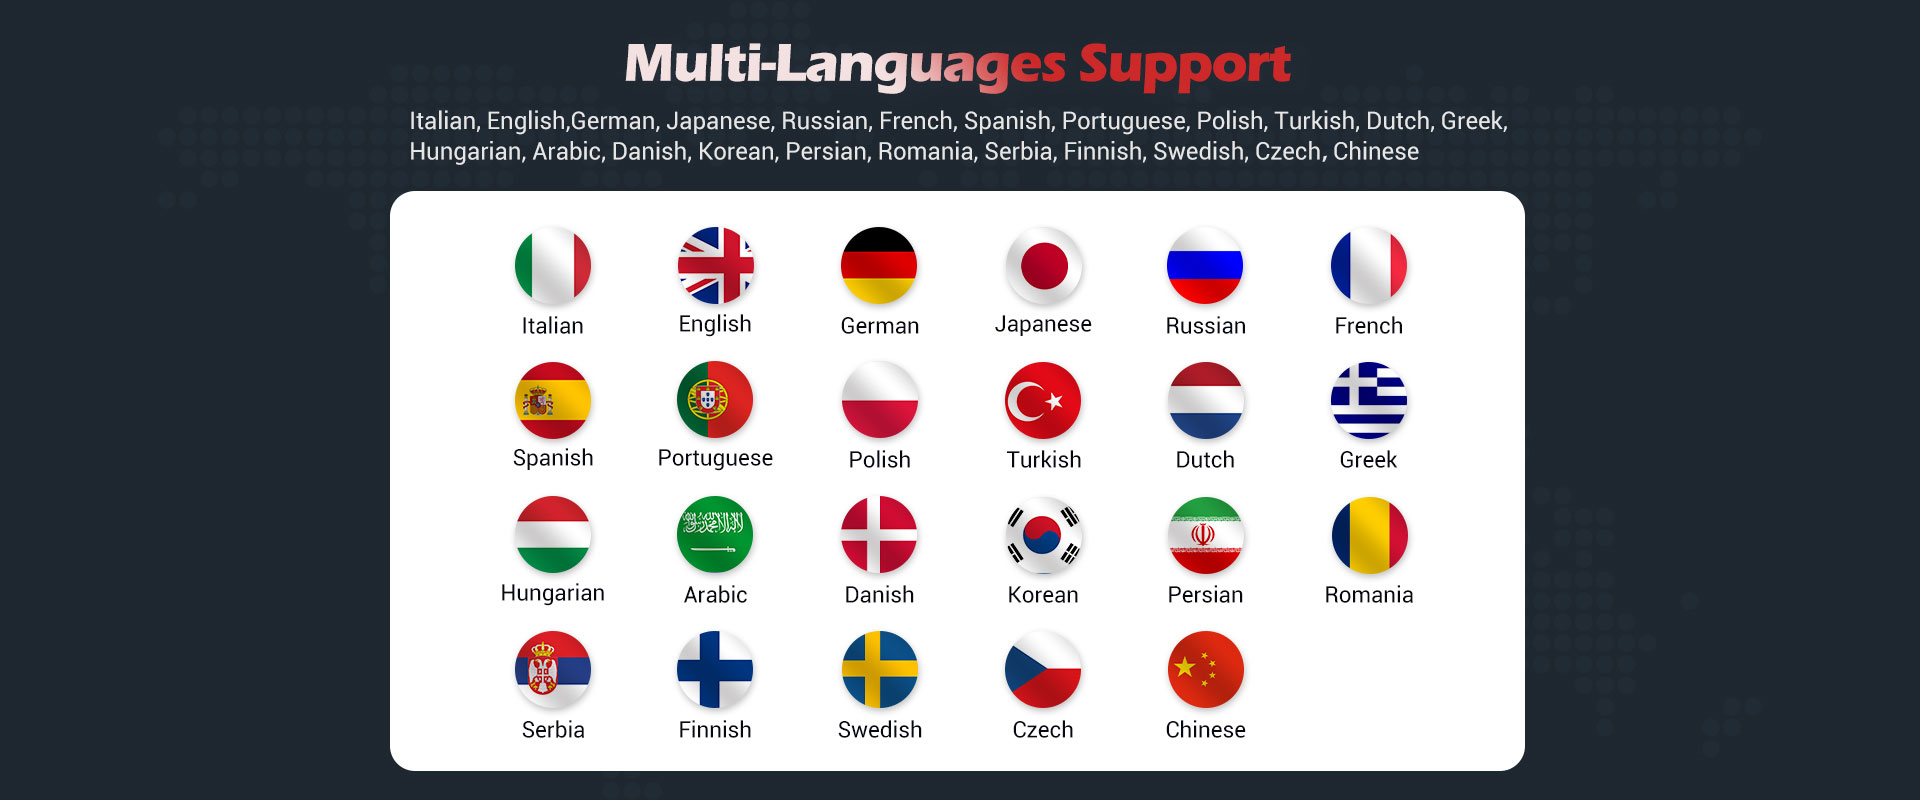 Multi-languages Support